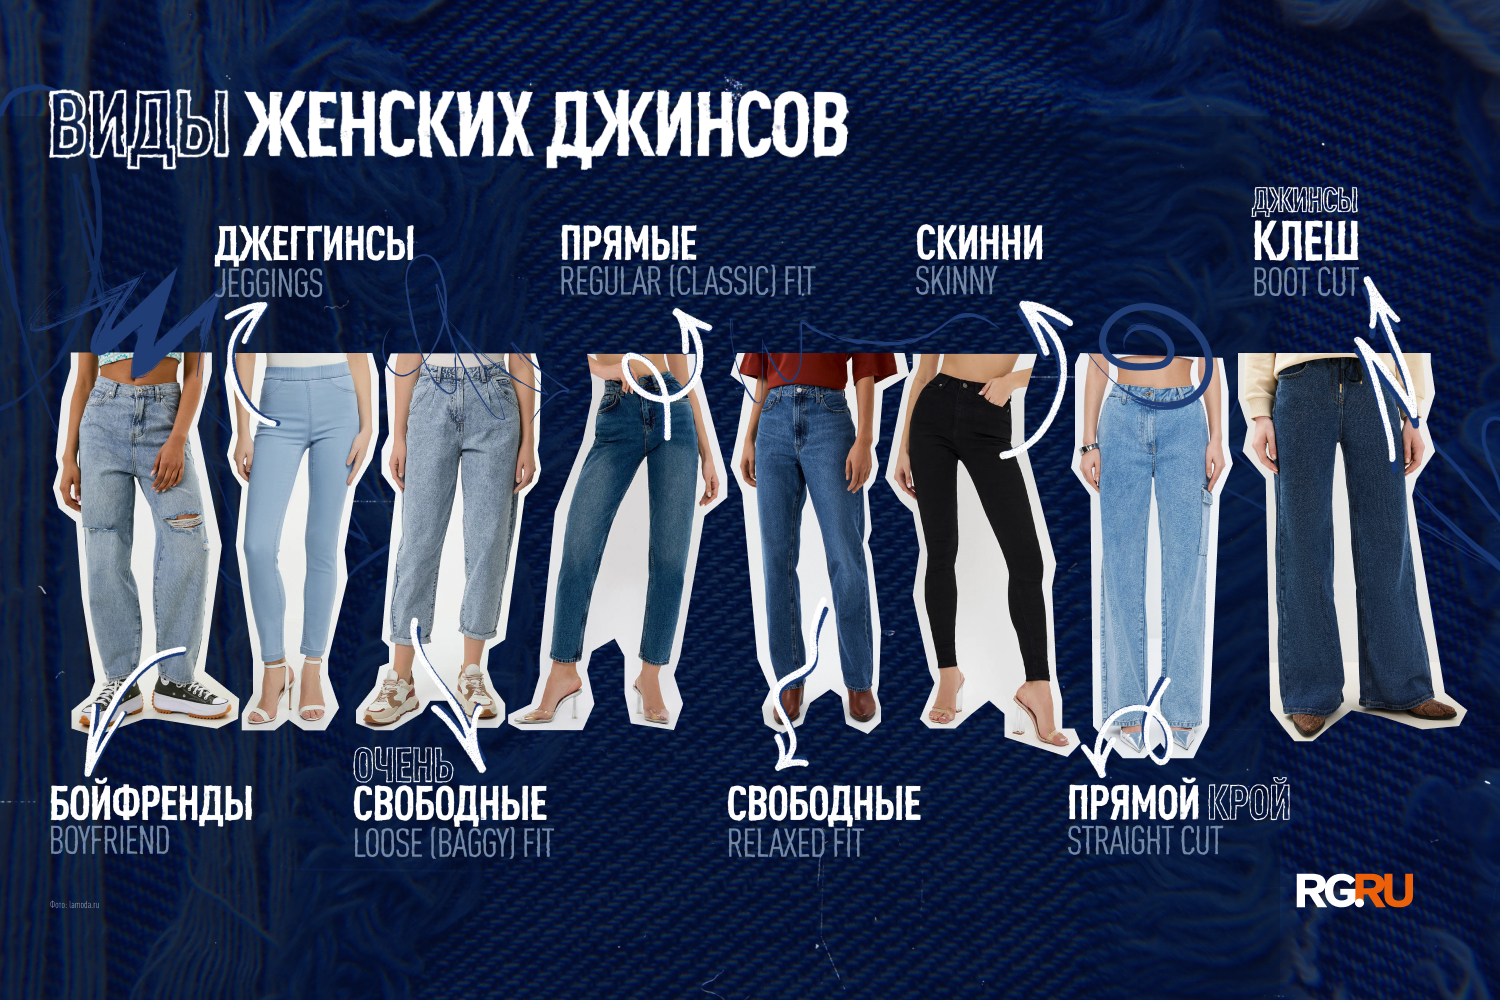 Какие именно джинсы красятся?